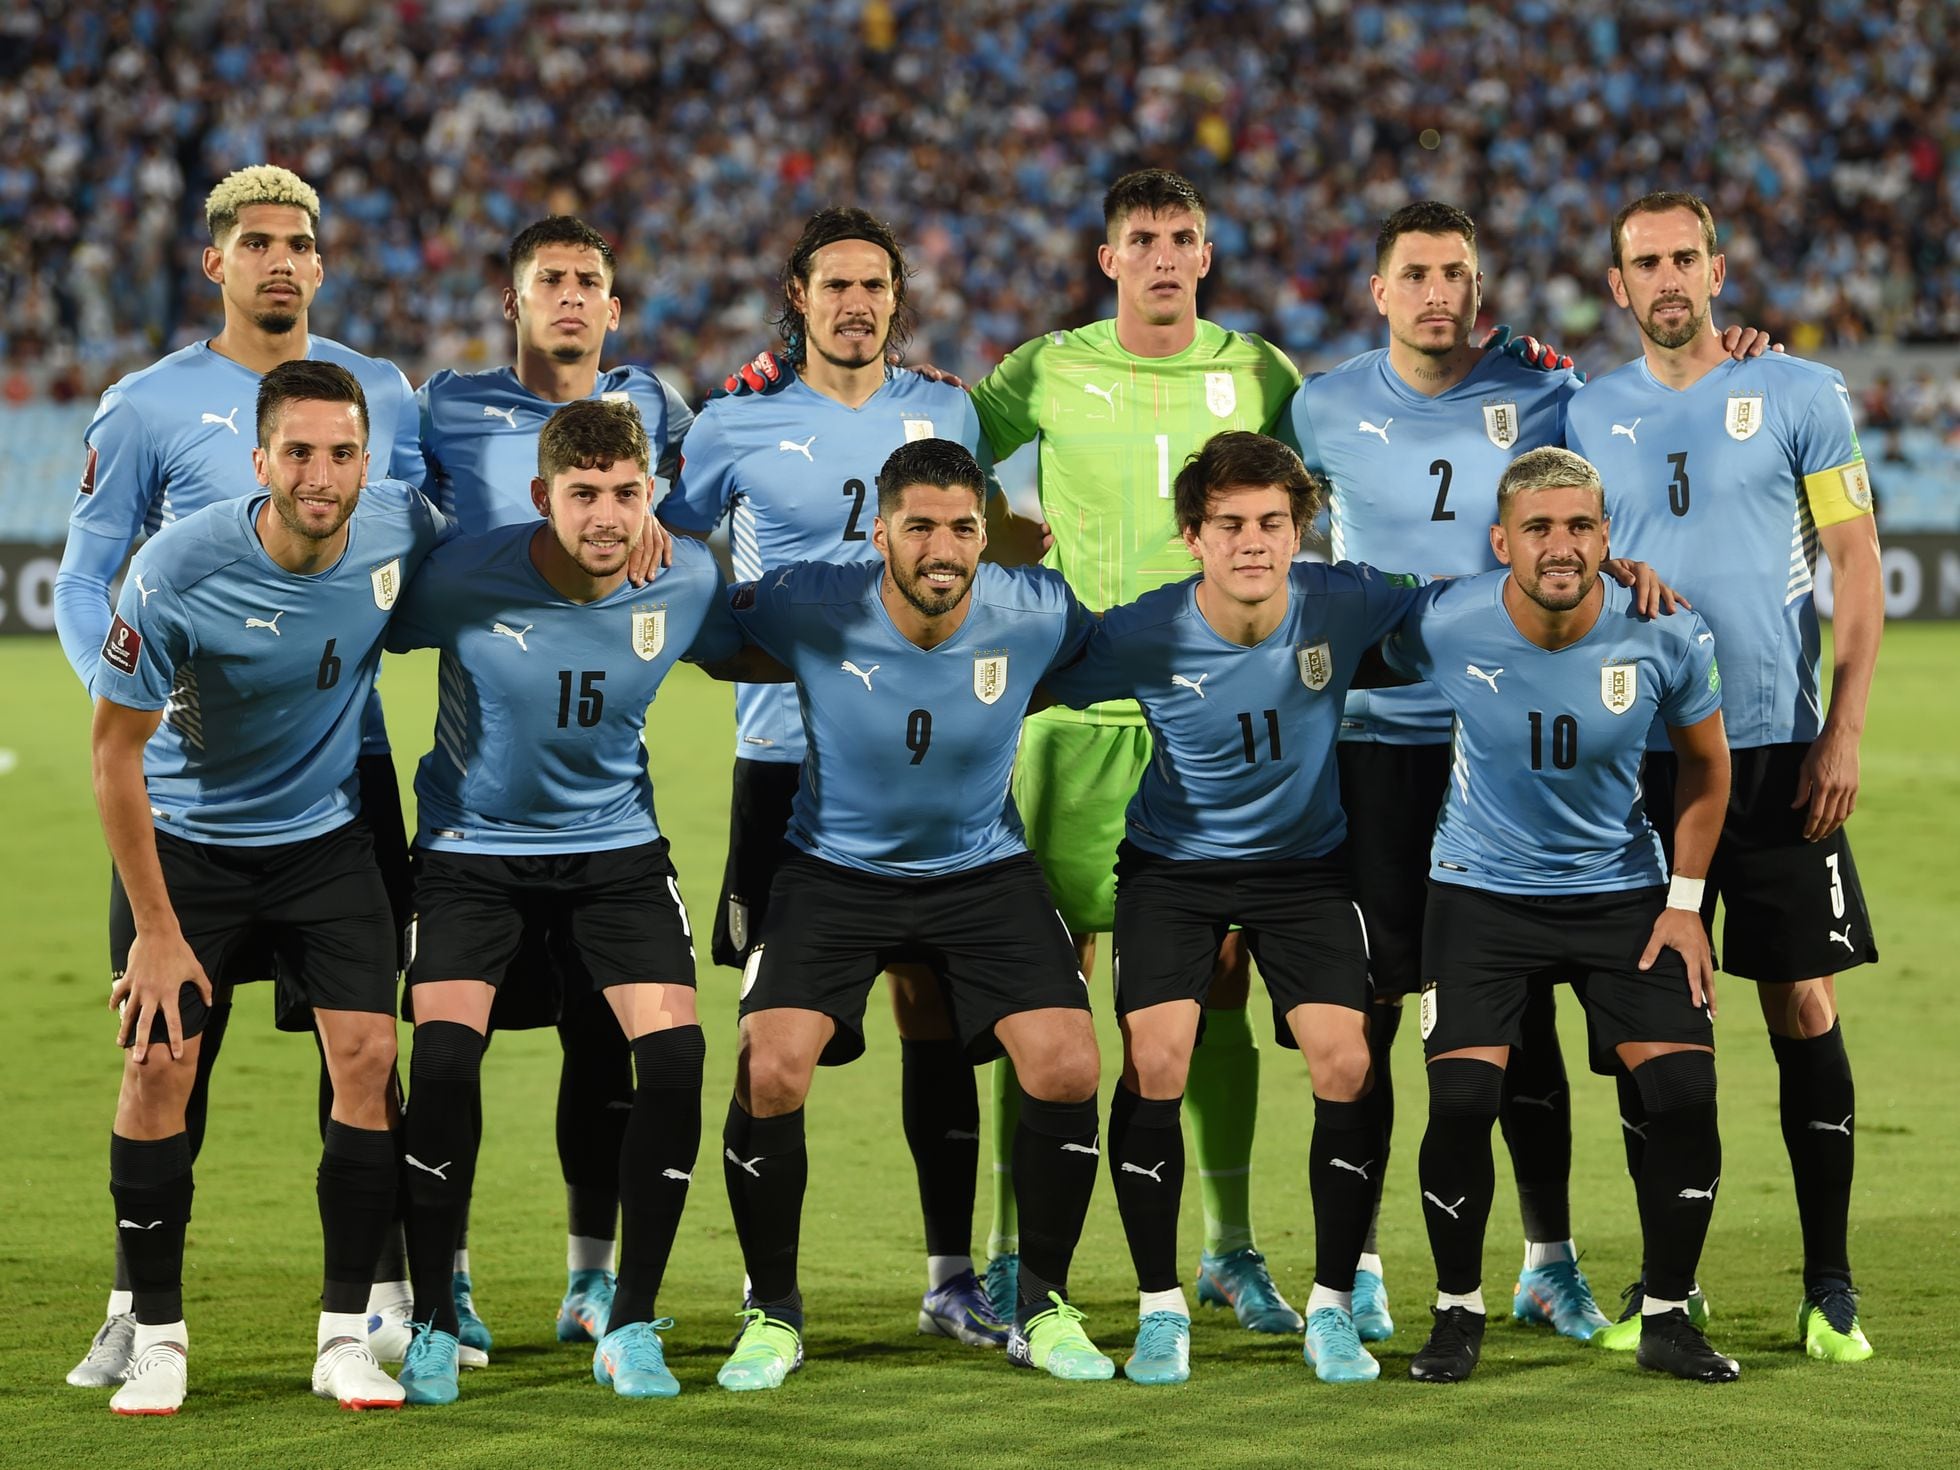 Uruguay debuta hoy luego de 10 años en el Mundial de Fútbol Playa - EL PAÍS  Uruguay